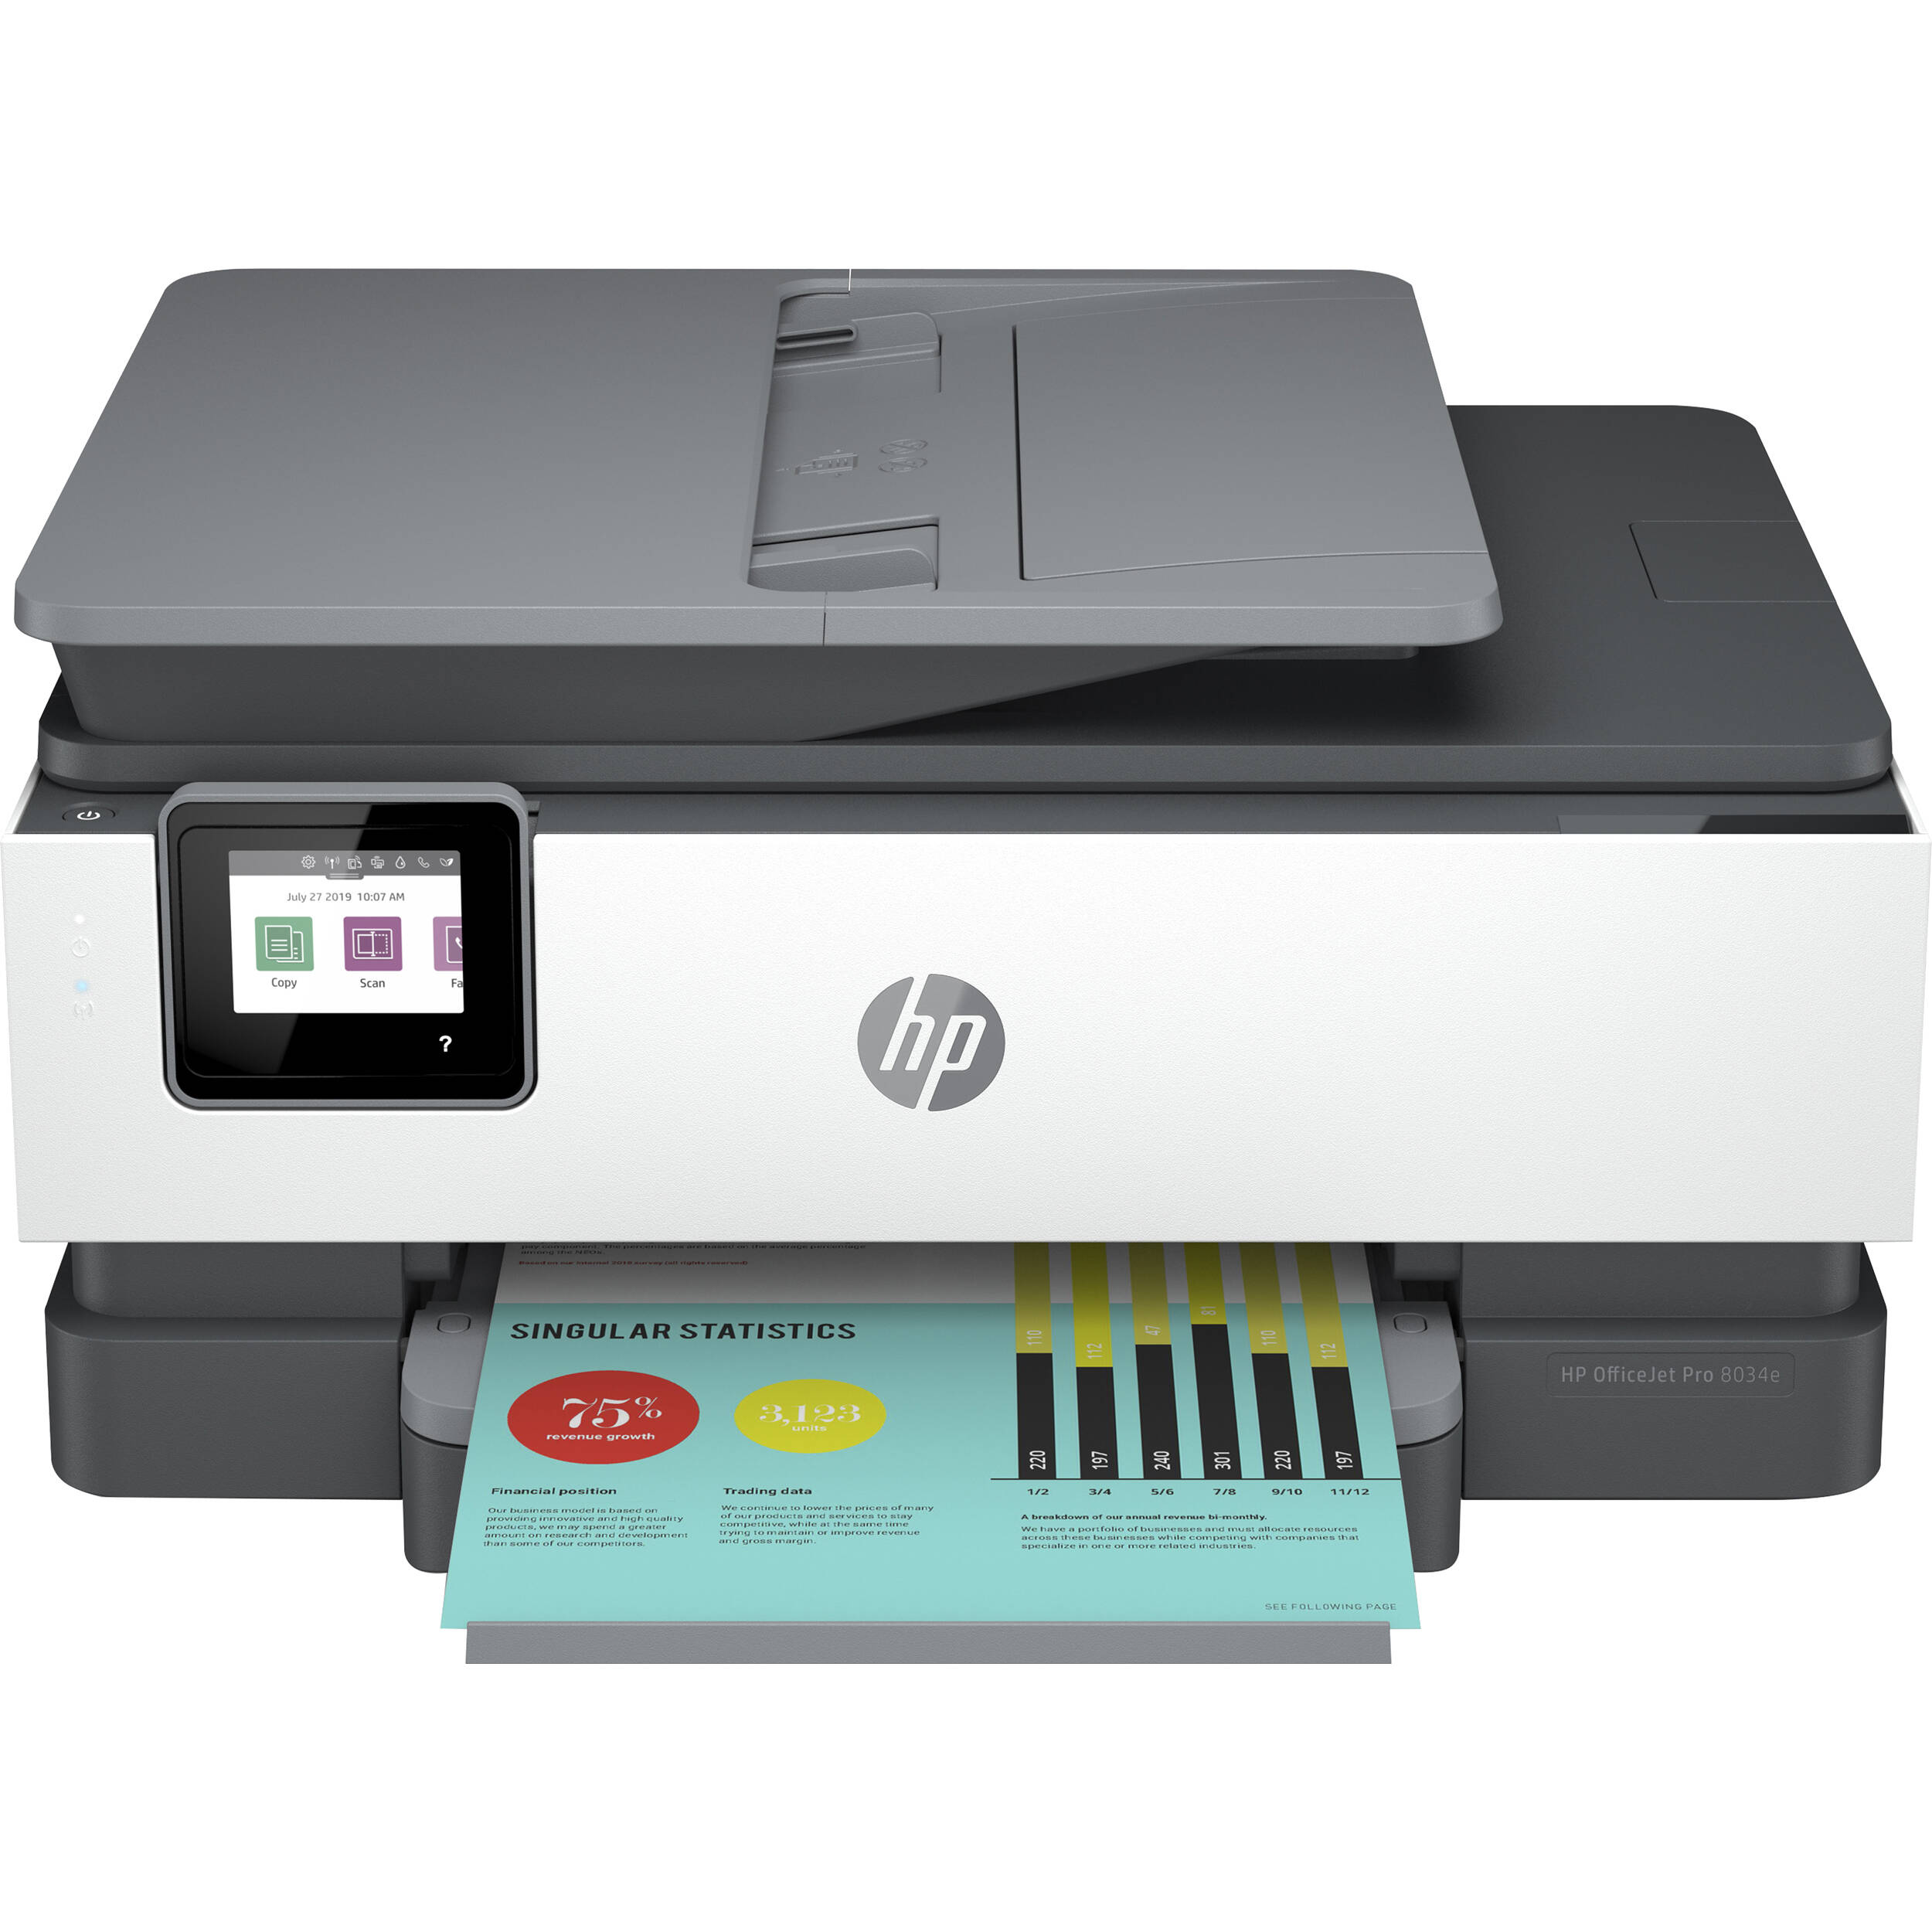 HP HP-OJPRO8034E-B-RB OfficeJet Pro 8034e Wireless Basalt All-In-One Inkjet Printer - Certified Refurbished